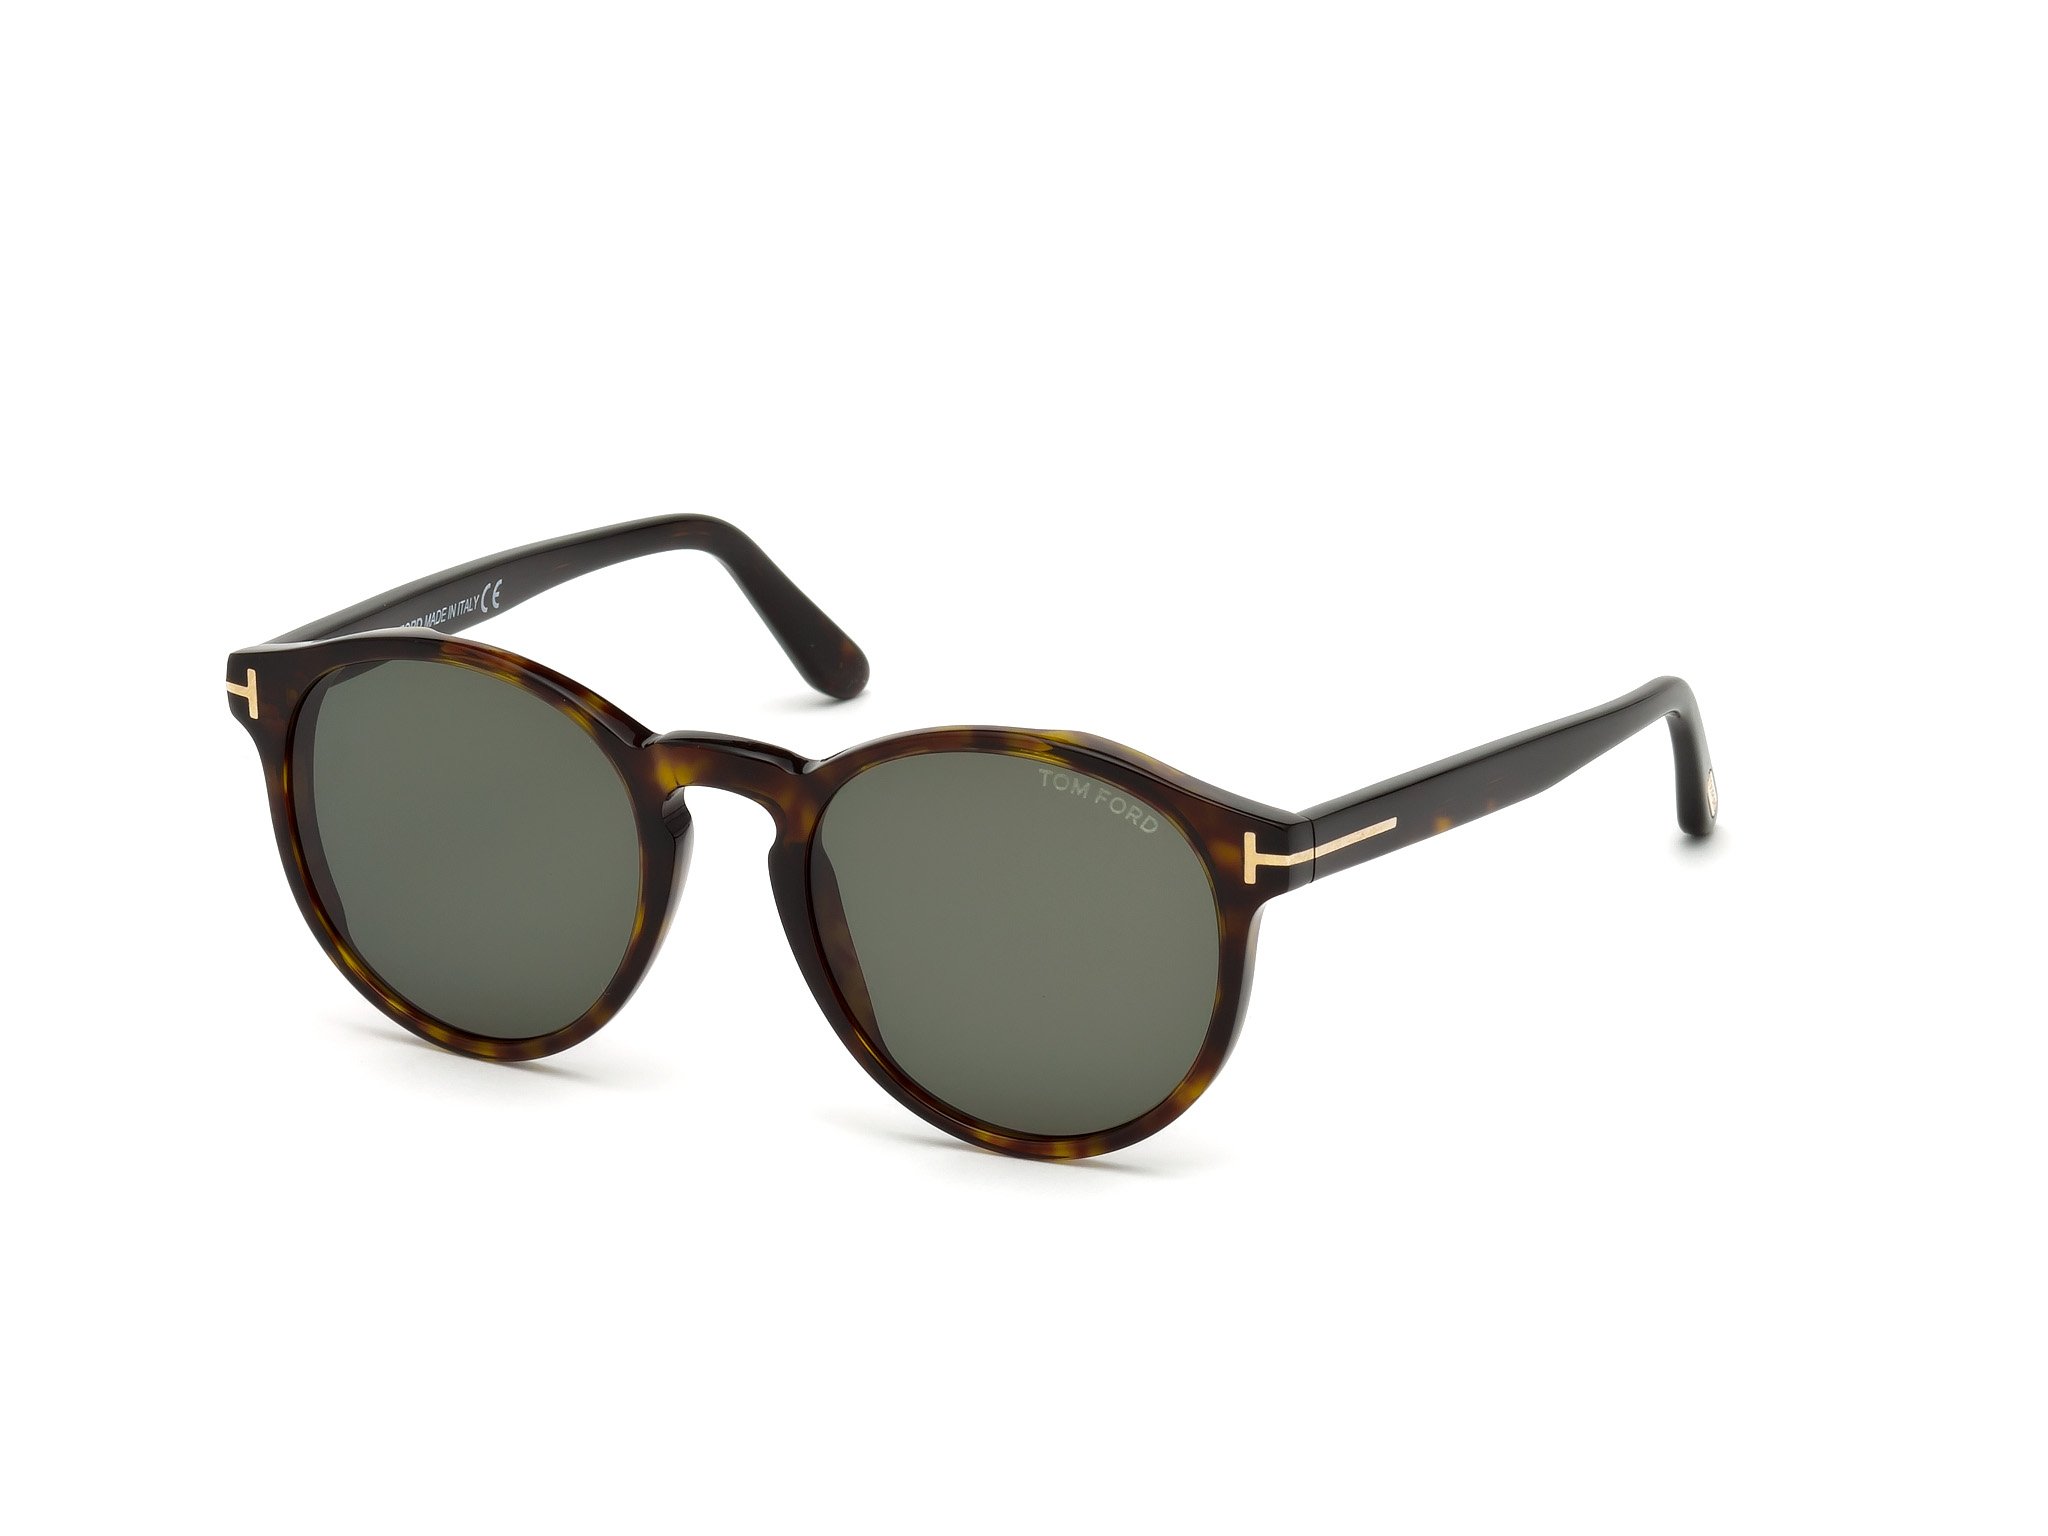 Das Bild zeigt die Sonnenbrille IAN FT0591 von der Marke Tom Ford in havanna